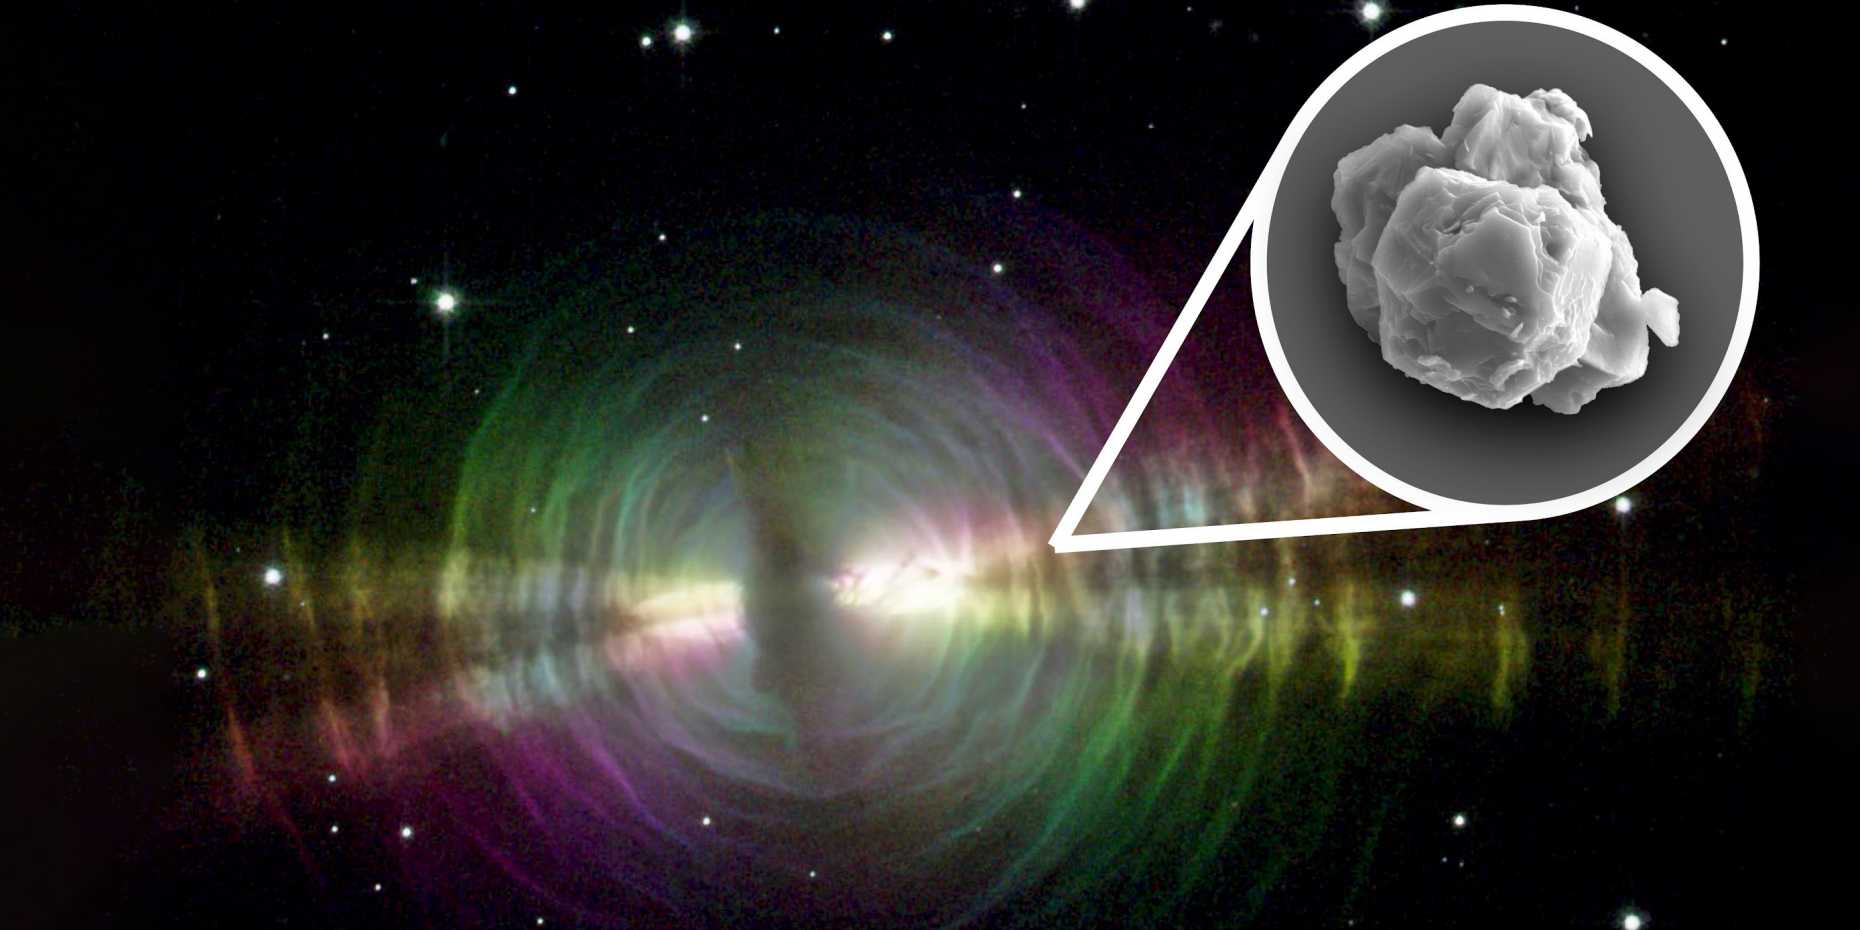 Staubauswürfe von Sternen wie dem des Eiernebels könnten Quellen sein für präsolare Siliziumkarbidkörner (Inset), die in Meteoriten gefunden werden. (Bild: NASA, JPL, STSci / Inset: Janaína N. Ávila)